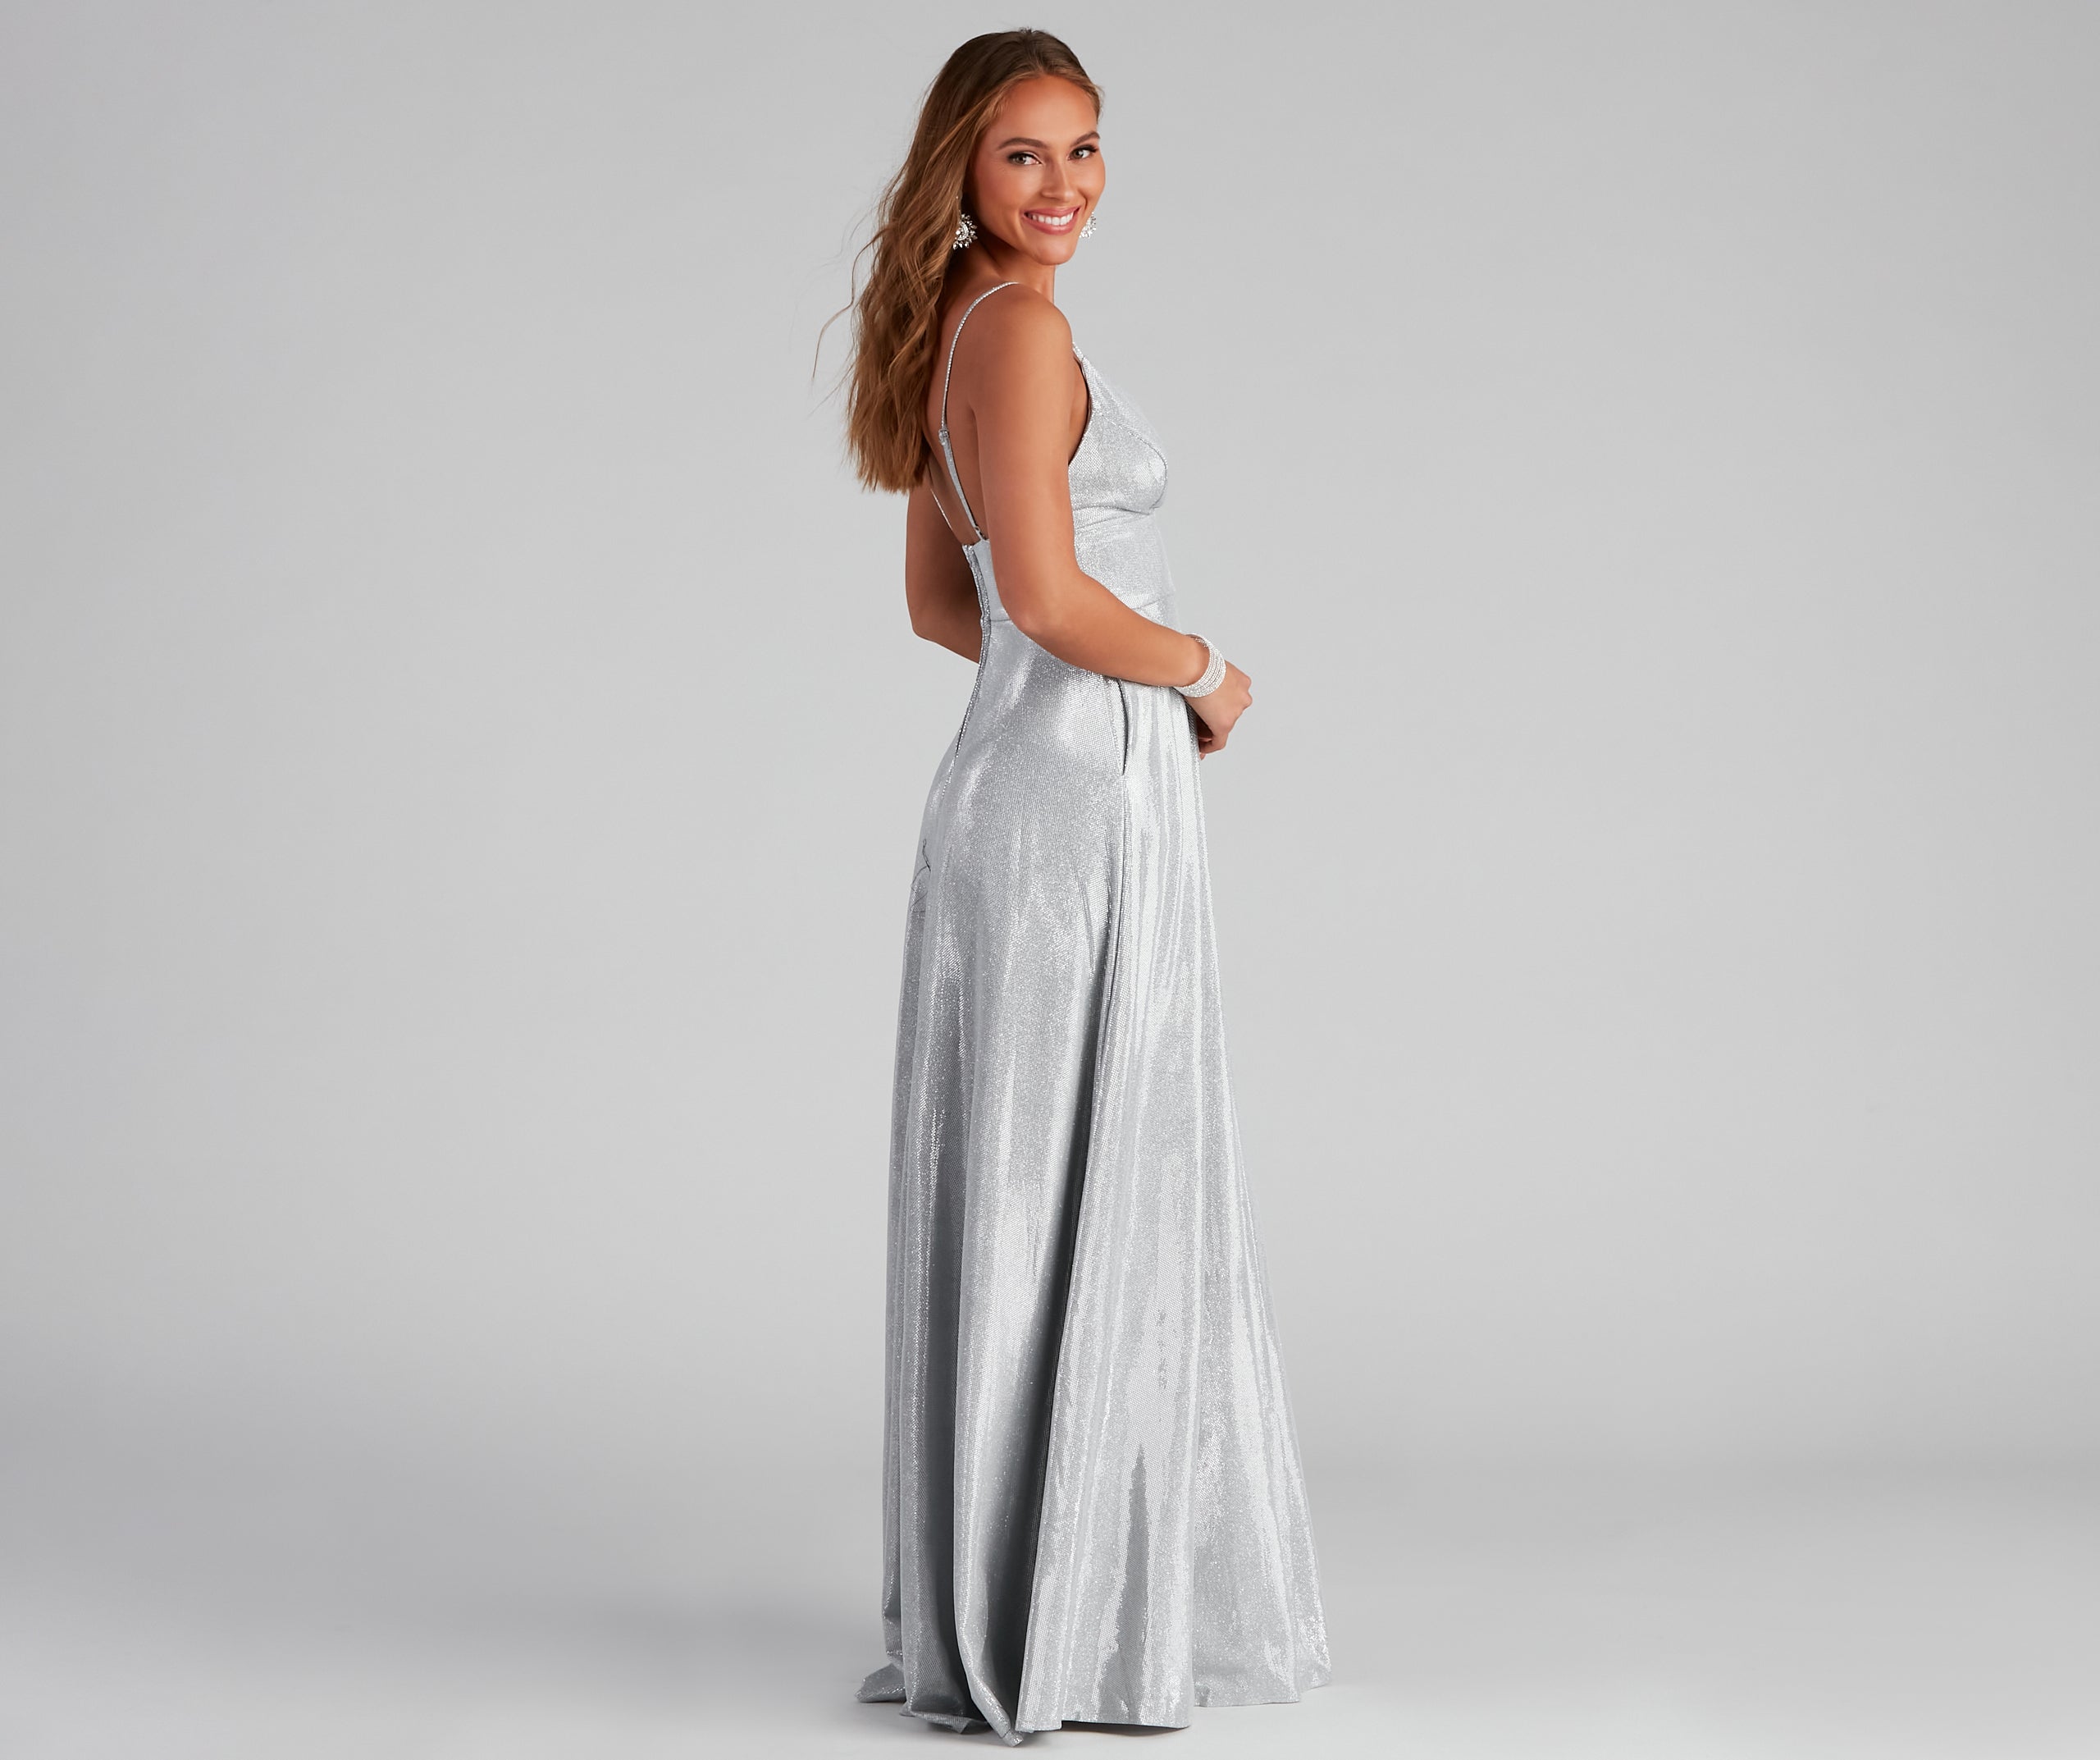 Freya Glitter A-Line Dress